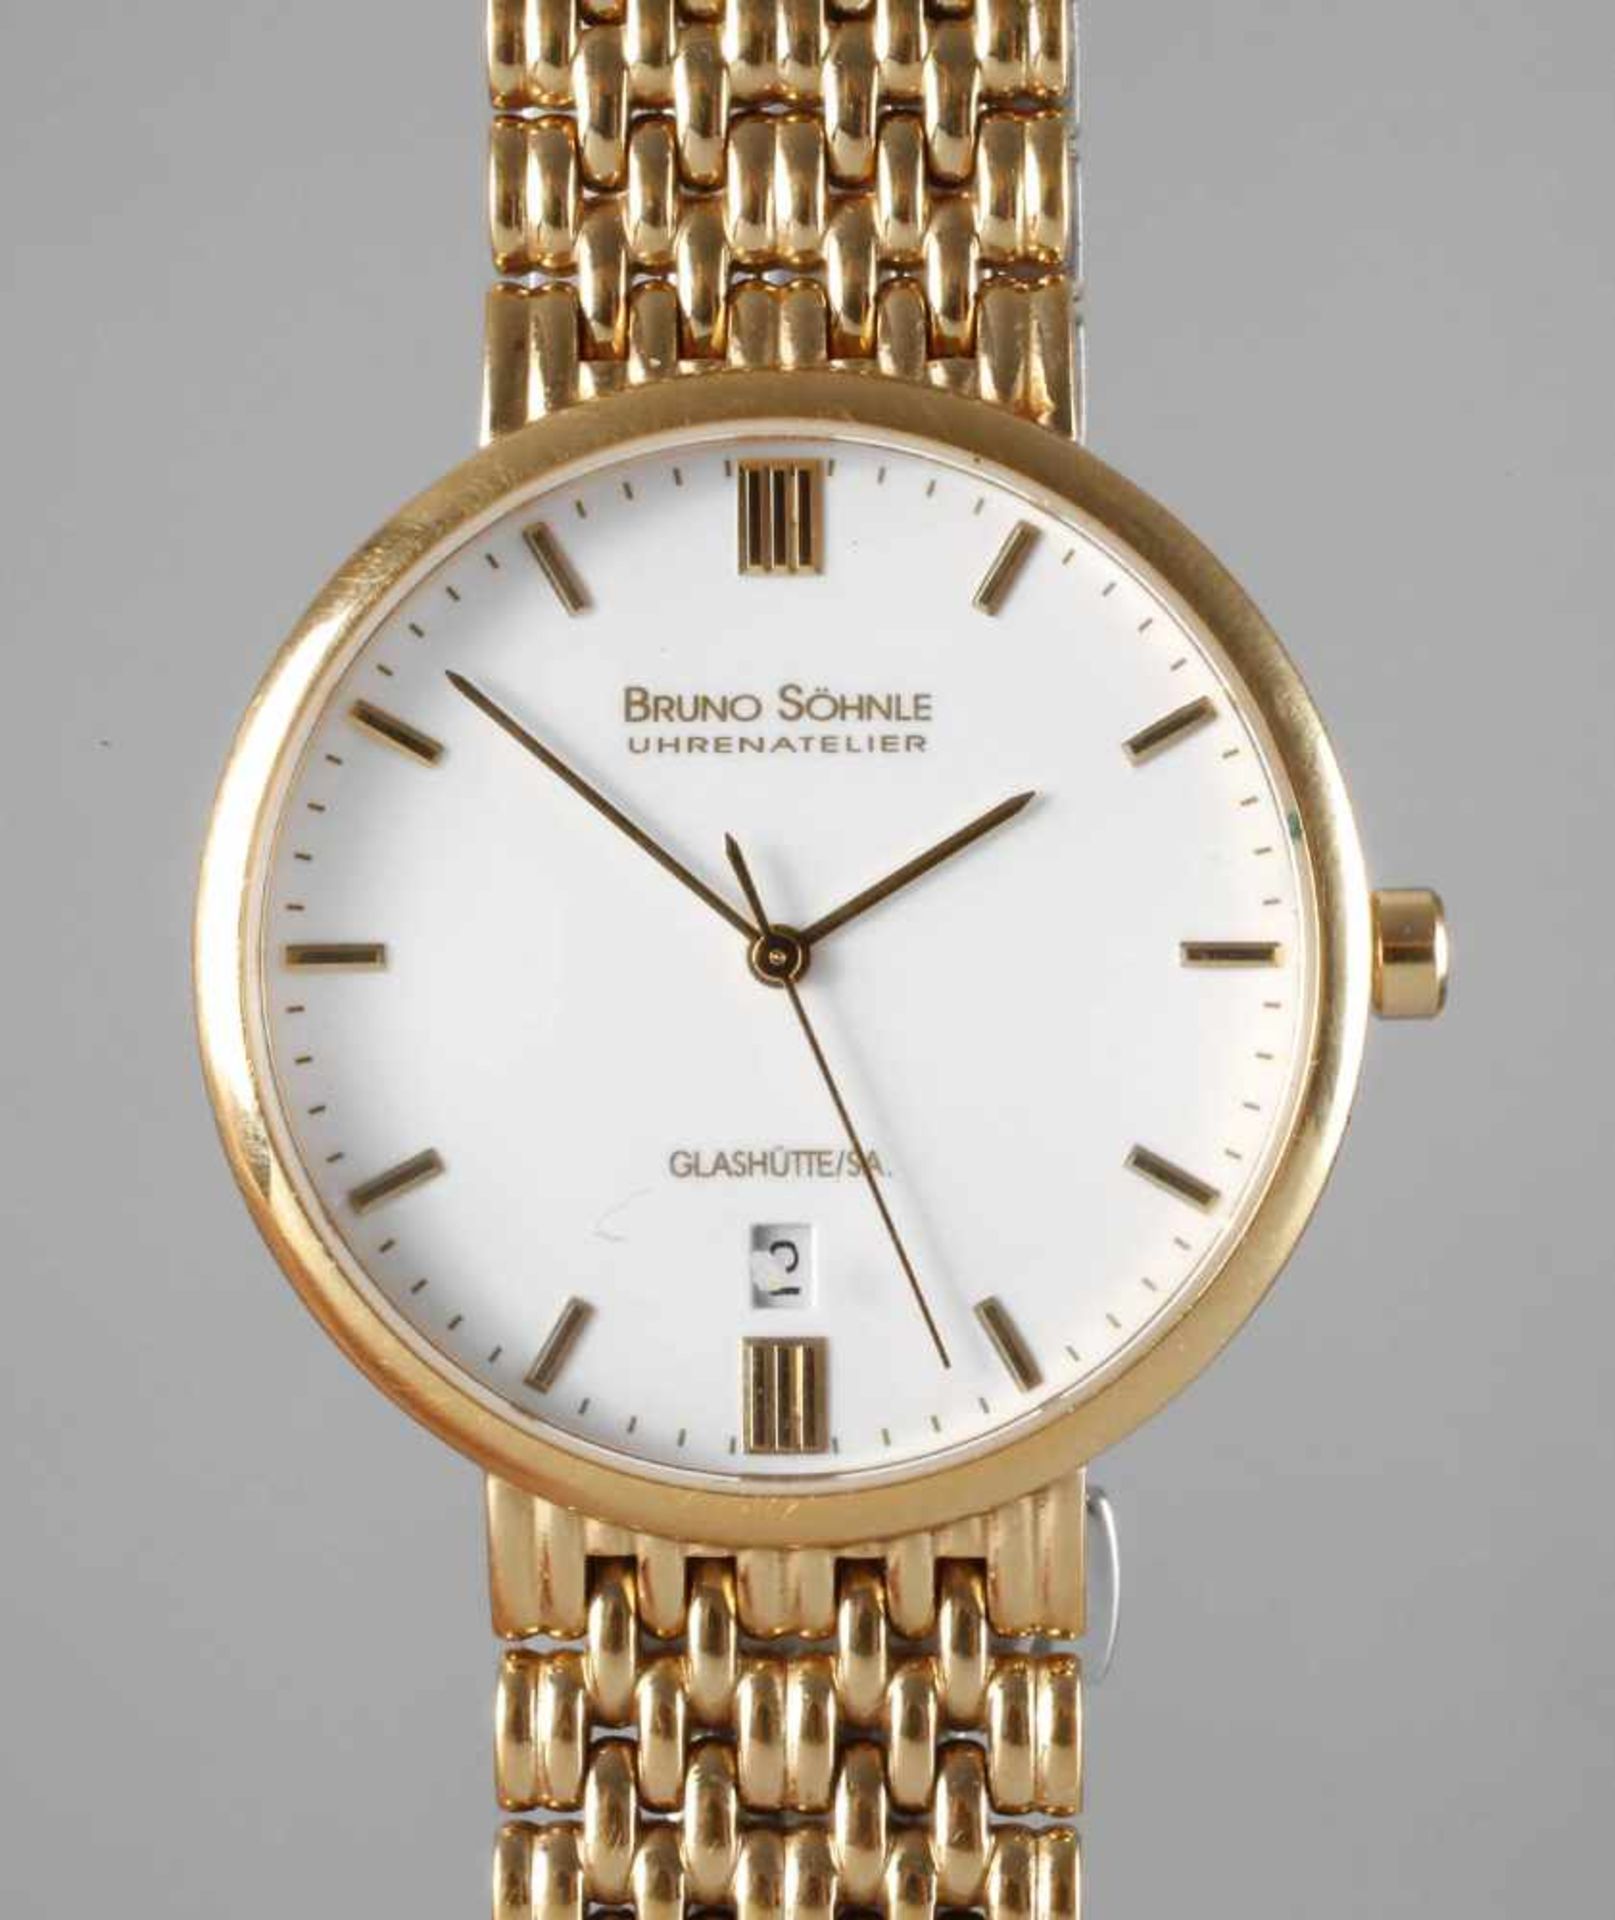 Armbanduhr Bruno & Söhne Glashütte um 2000, auf Ziffernblatt gemarkt Bruno Söhne, Uhrenatelier,